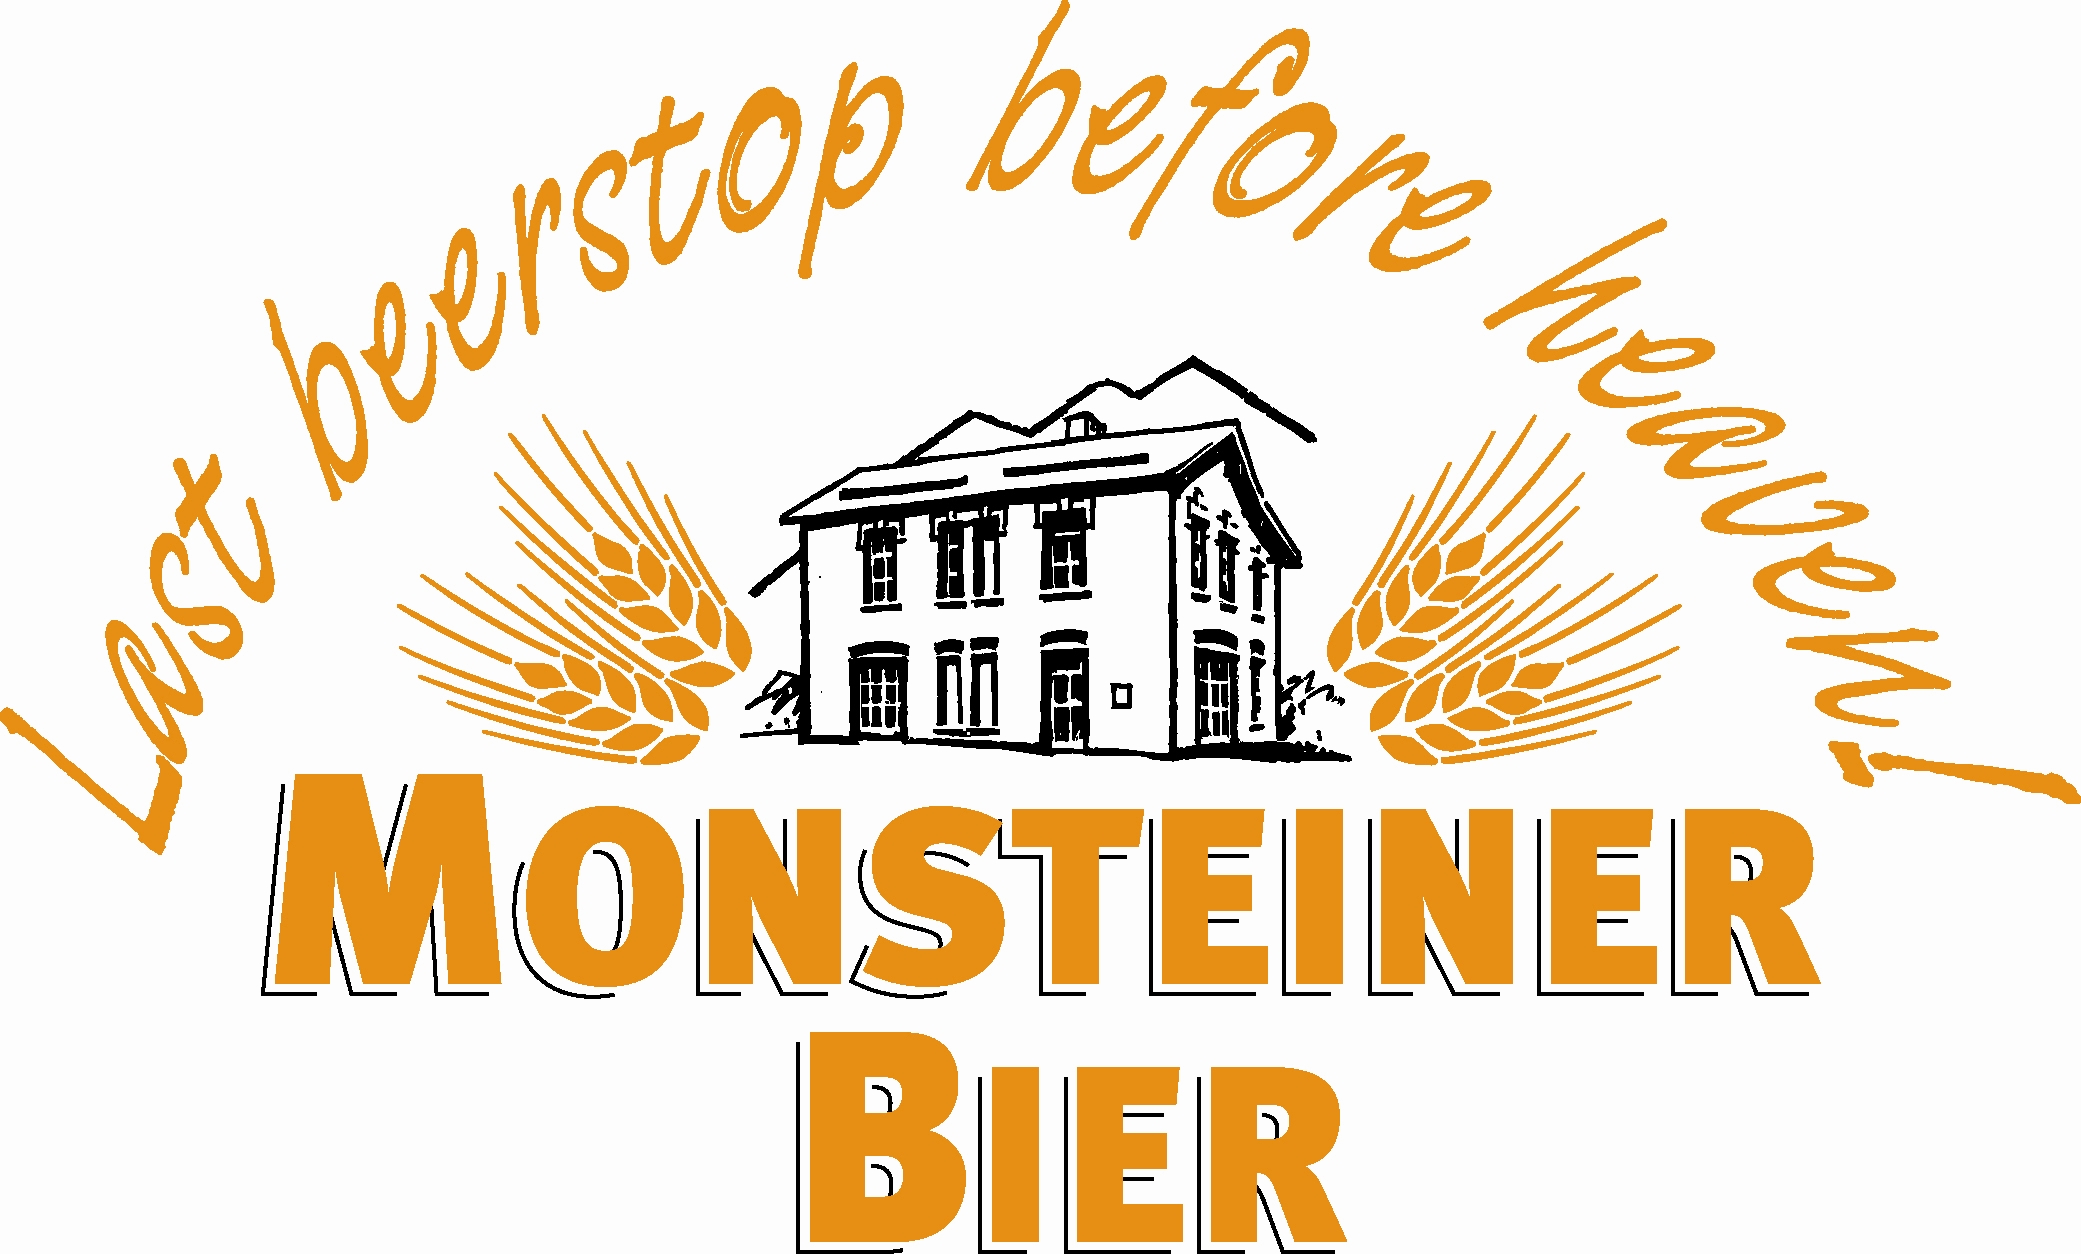 LO_Monsteiner_beerstop1.jpg